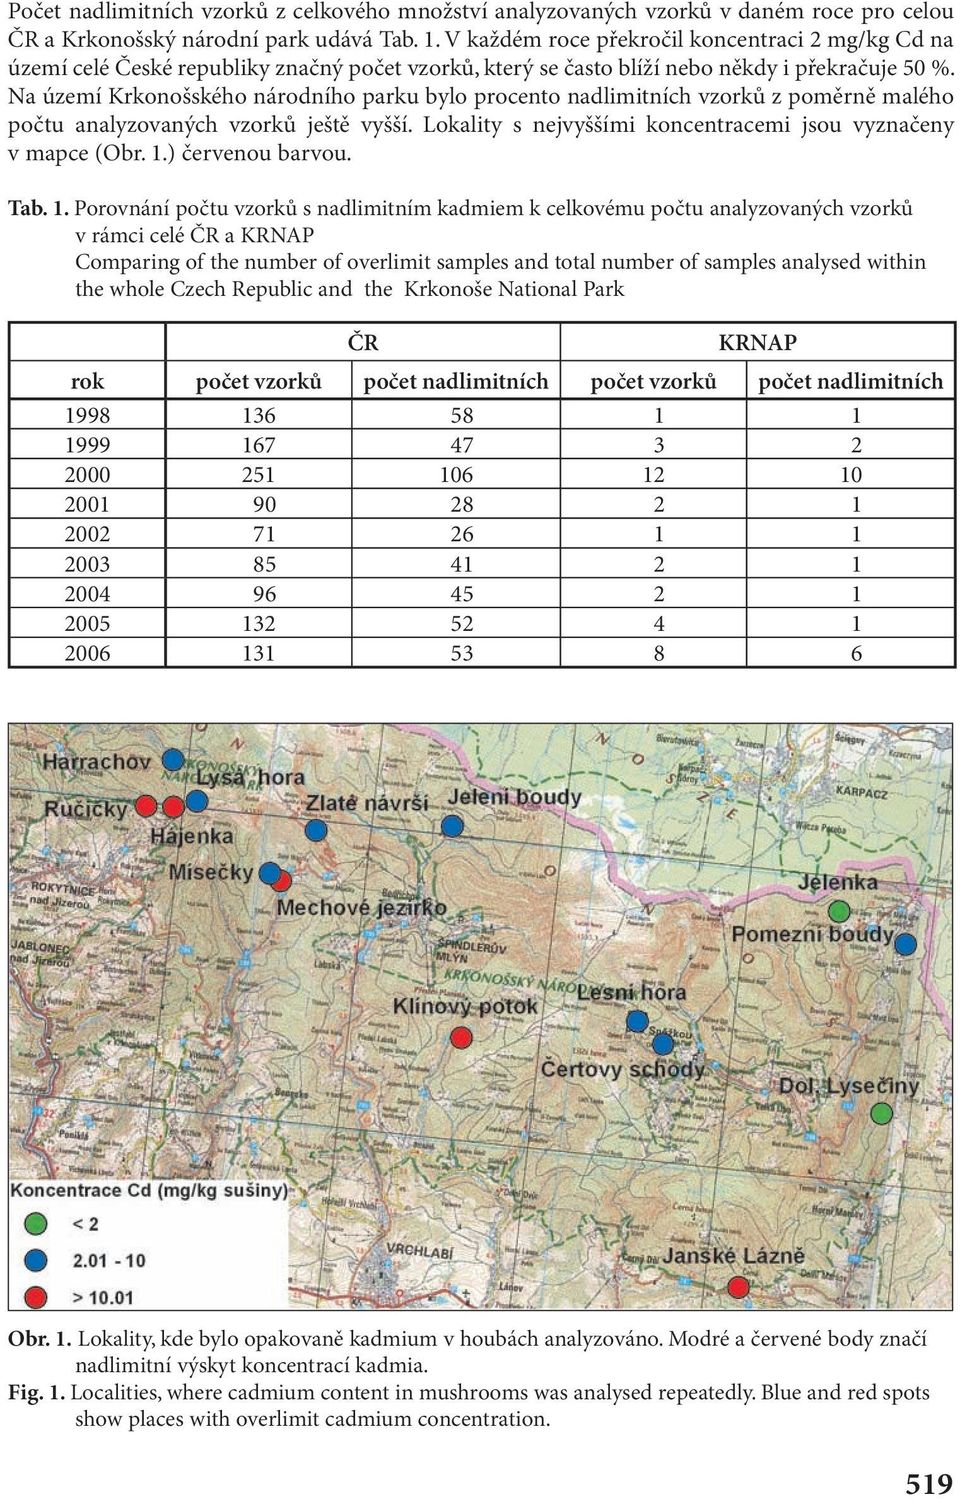 Na území Krkonošského národního parku bylo procento nadlimitních vzorků z poměrně malého počtu analyzovaných vzorků ještě vyšší. Lokality s nejvyššími koncentracemi jsou vyznačeny v mapce (Obr. 1.